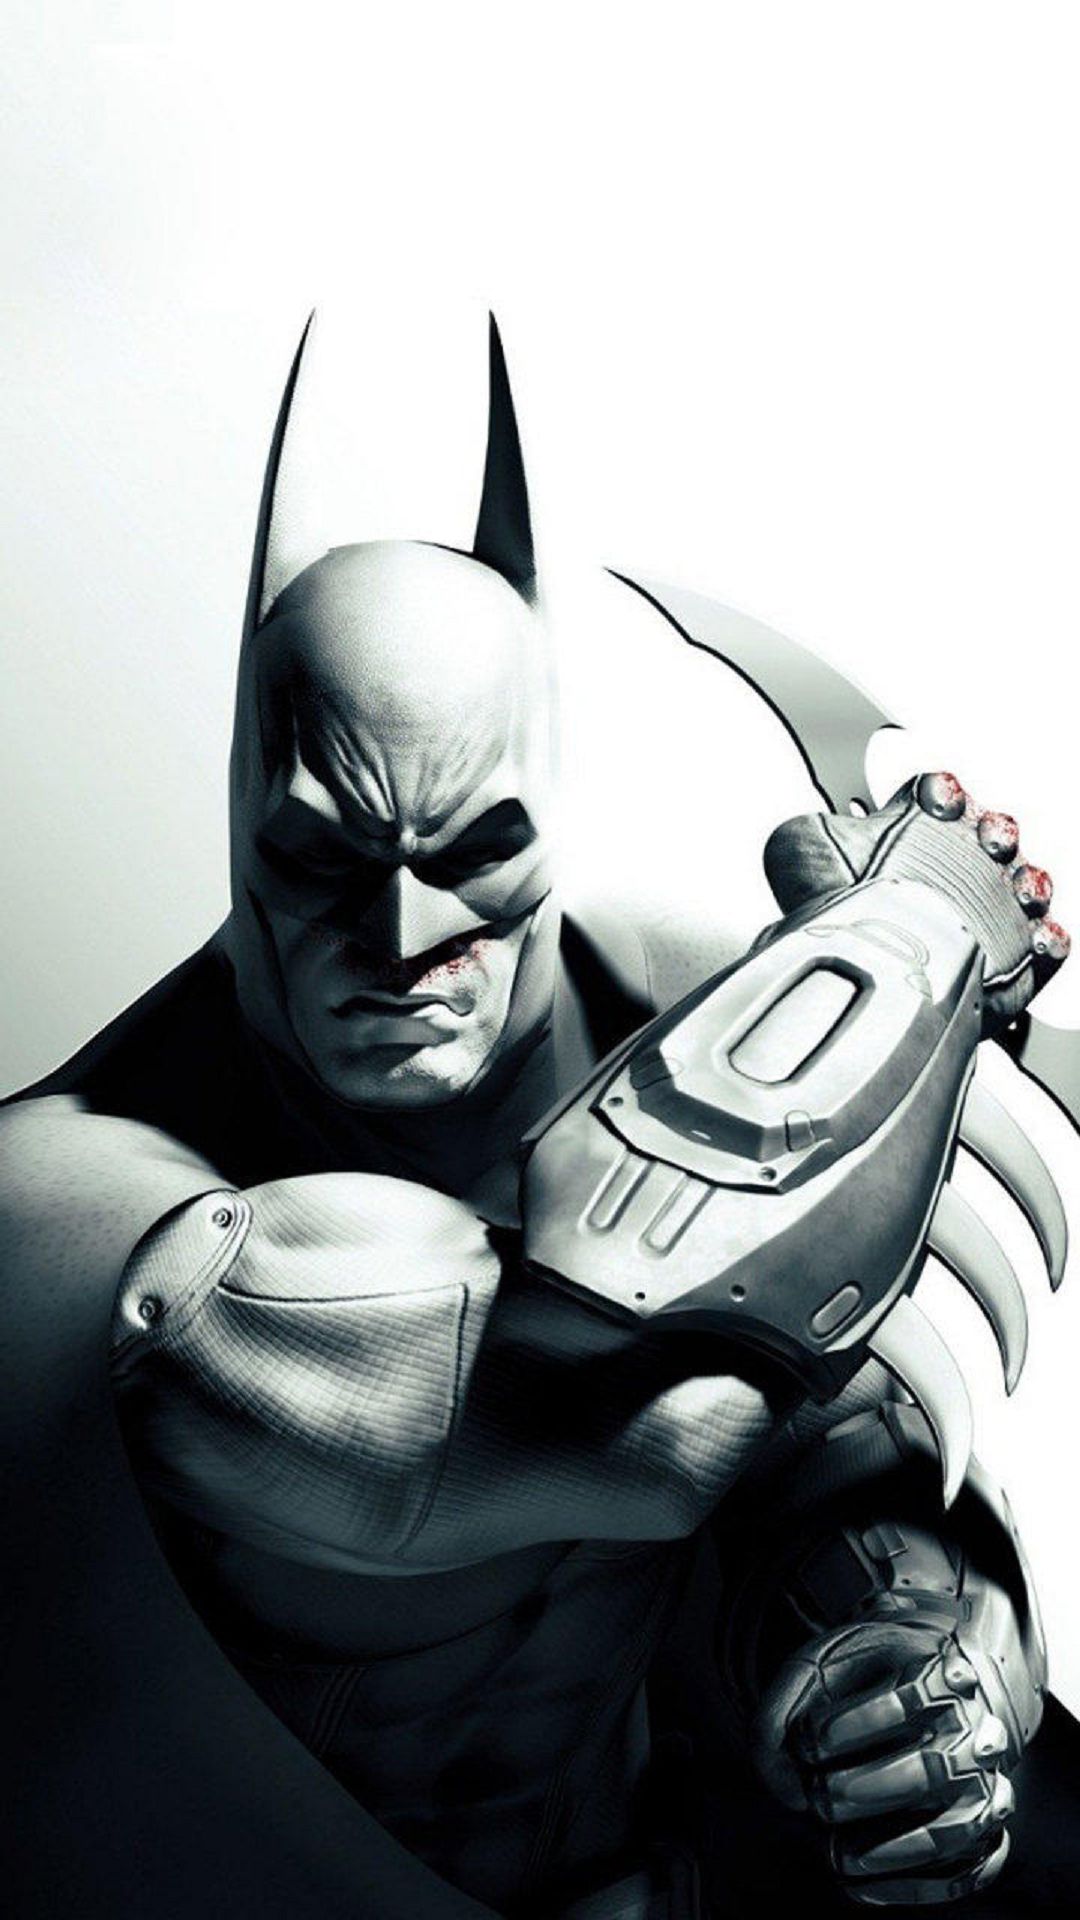 fond d'écran batman pour iphone 6,homme chauve souris,personnage fictif,super héros,ligue de justice,figurine